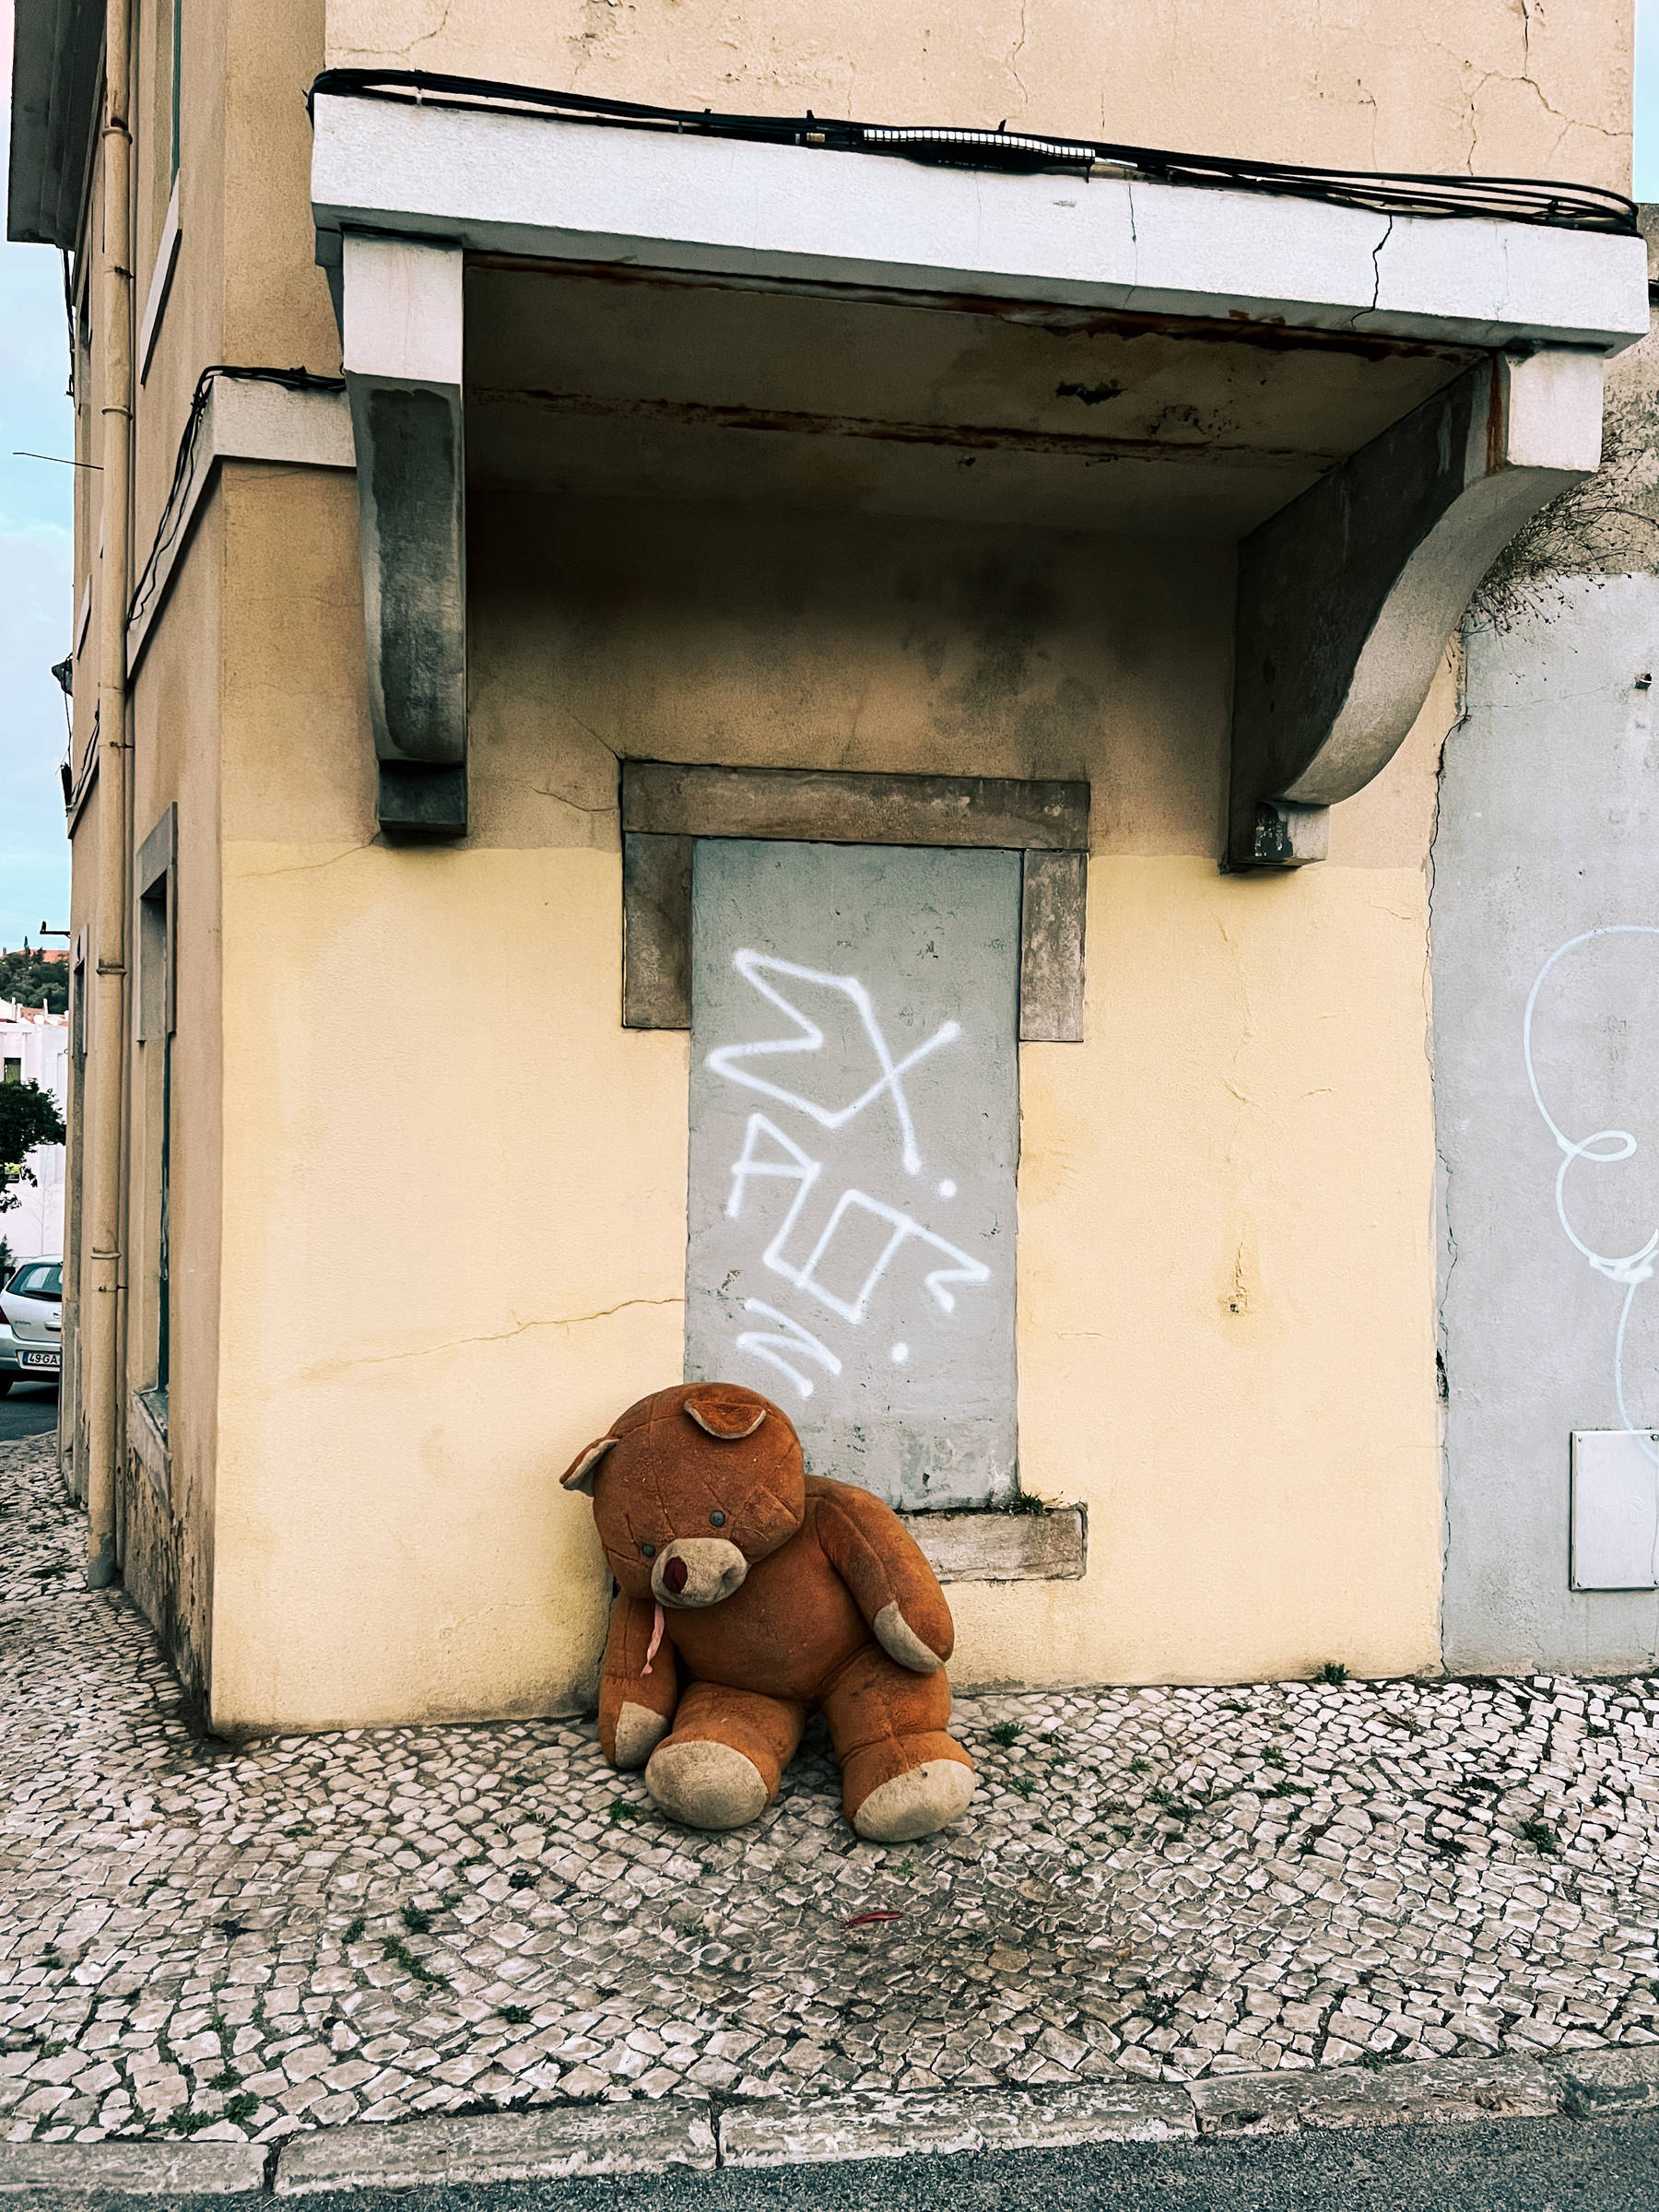 An abandoned teddy bear.